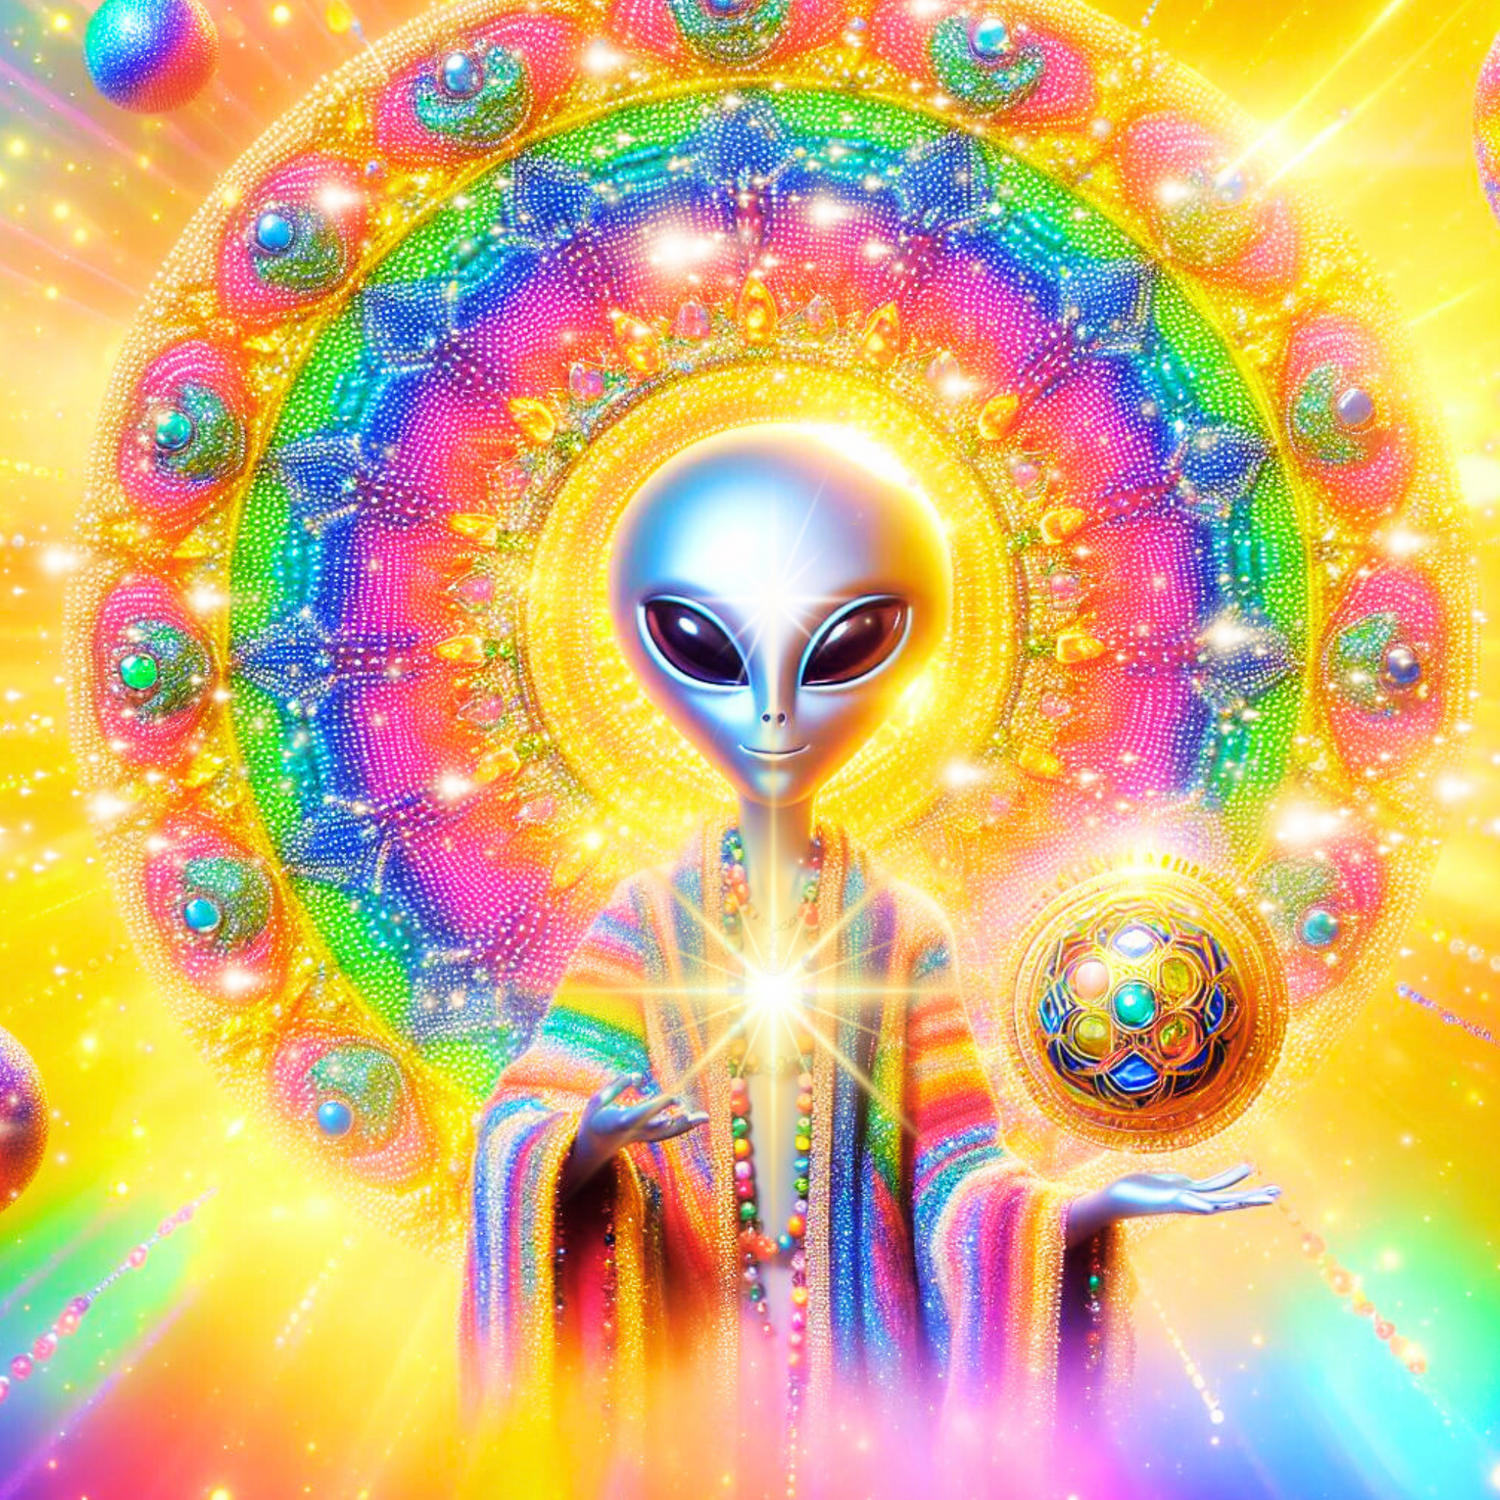 alien vor einem regenbogenfarbenen mandala